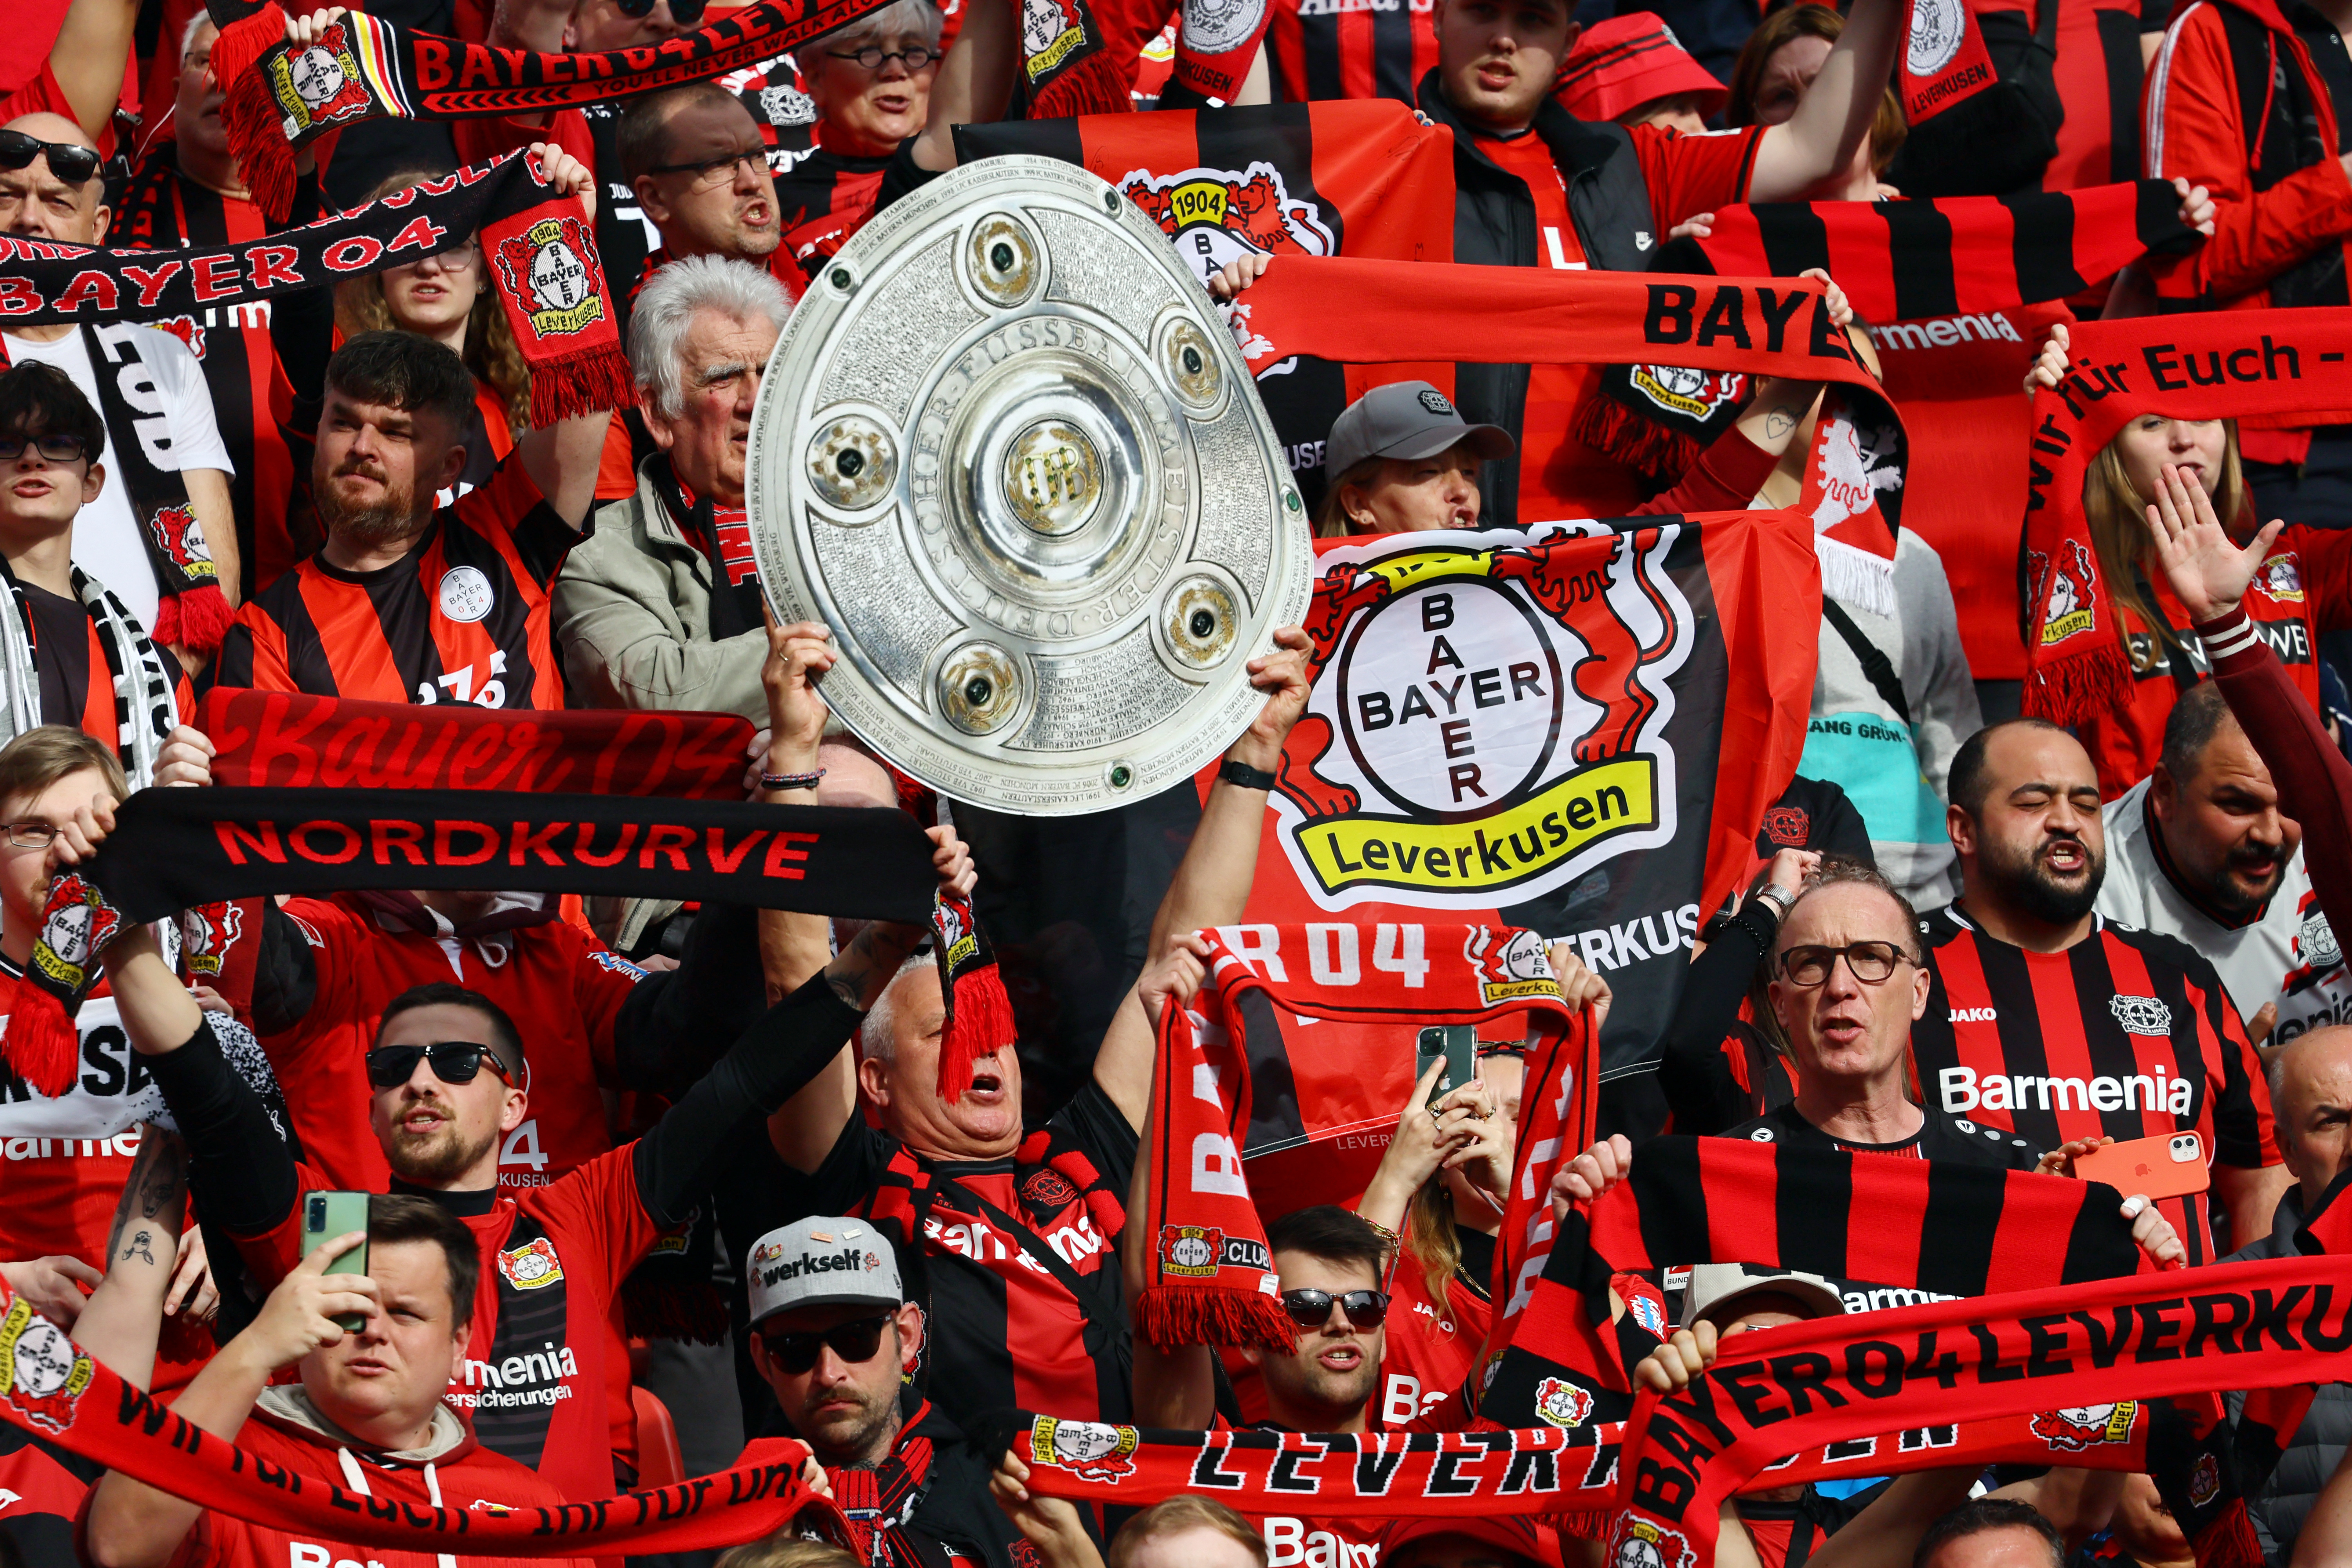 Mehrere Fans brachten Nachbildungen des Bundesligatitels mit